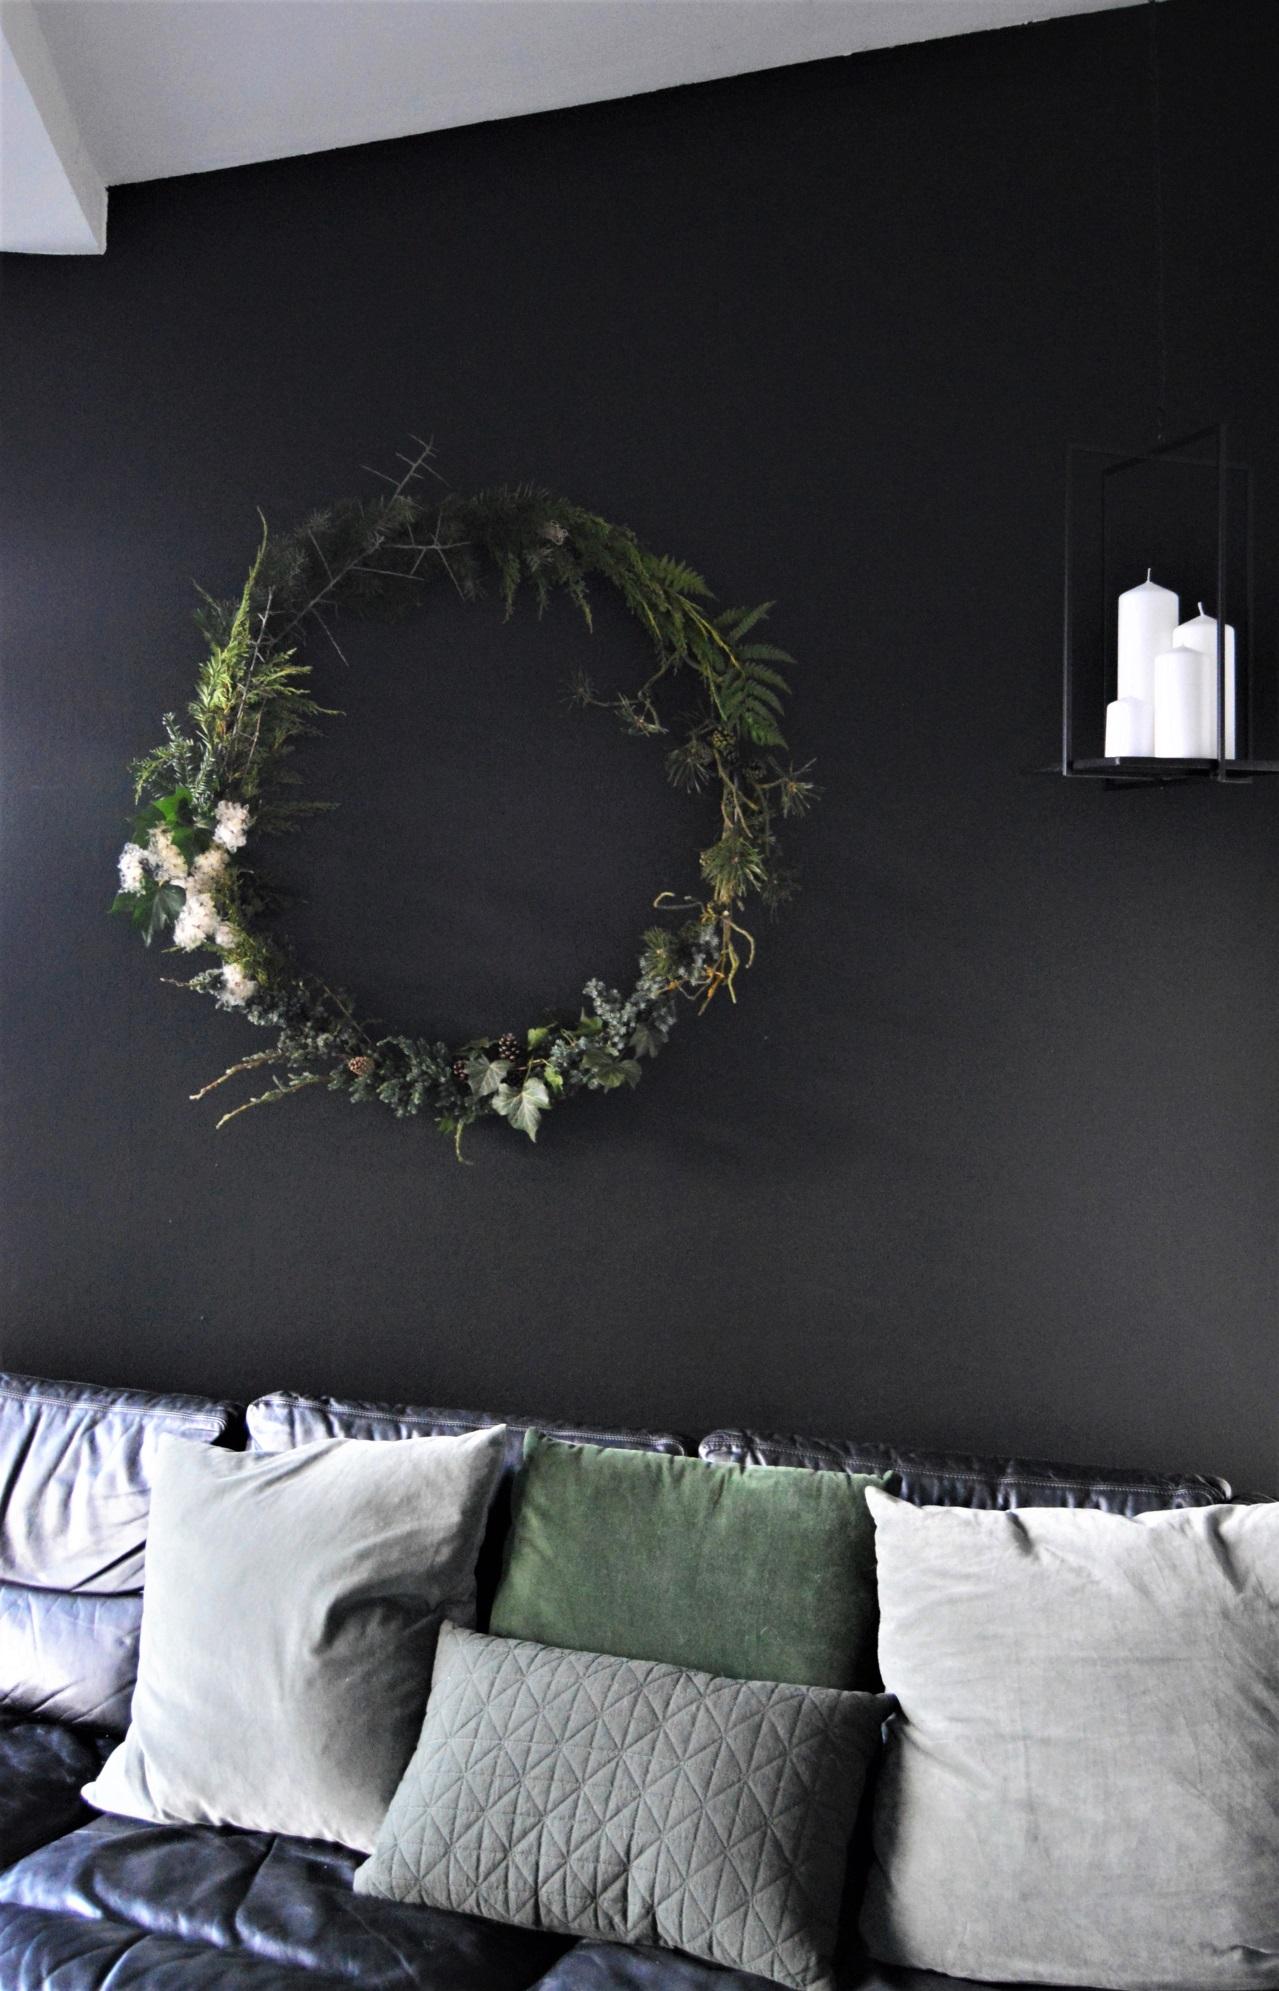 Meinen #diy Kranz zum #Advent aus einem Hoola Hoop Reifen, im Blog.
#schwarz #minimalistisch #weihnachten #grün